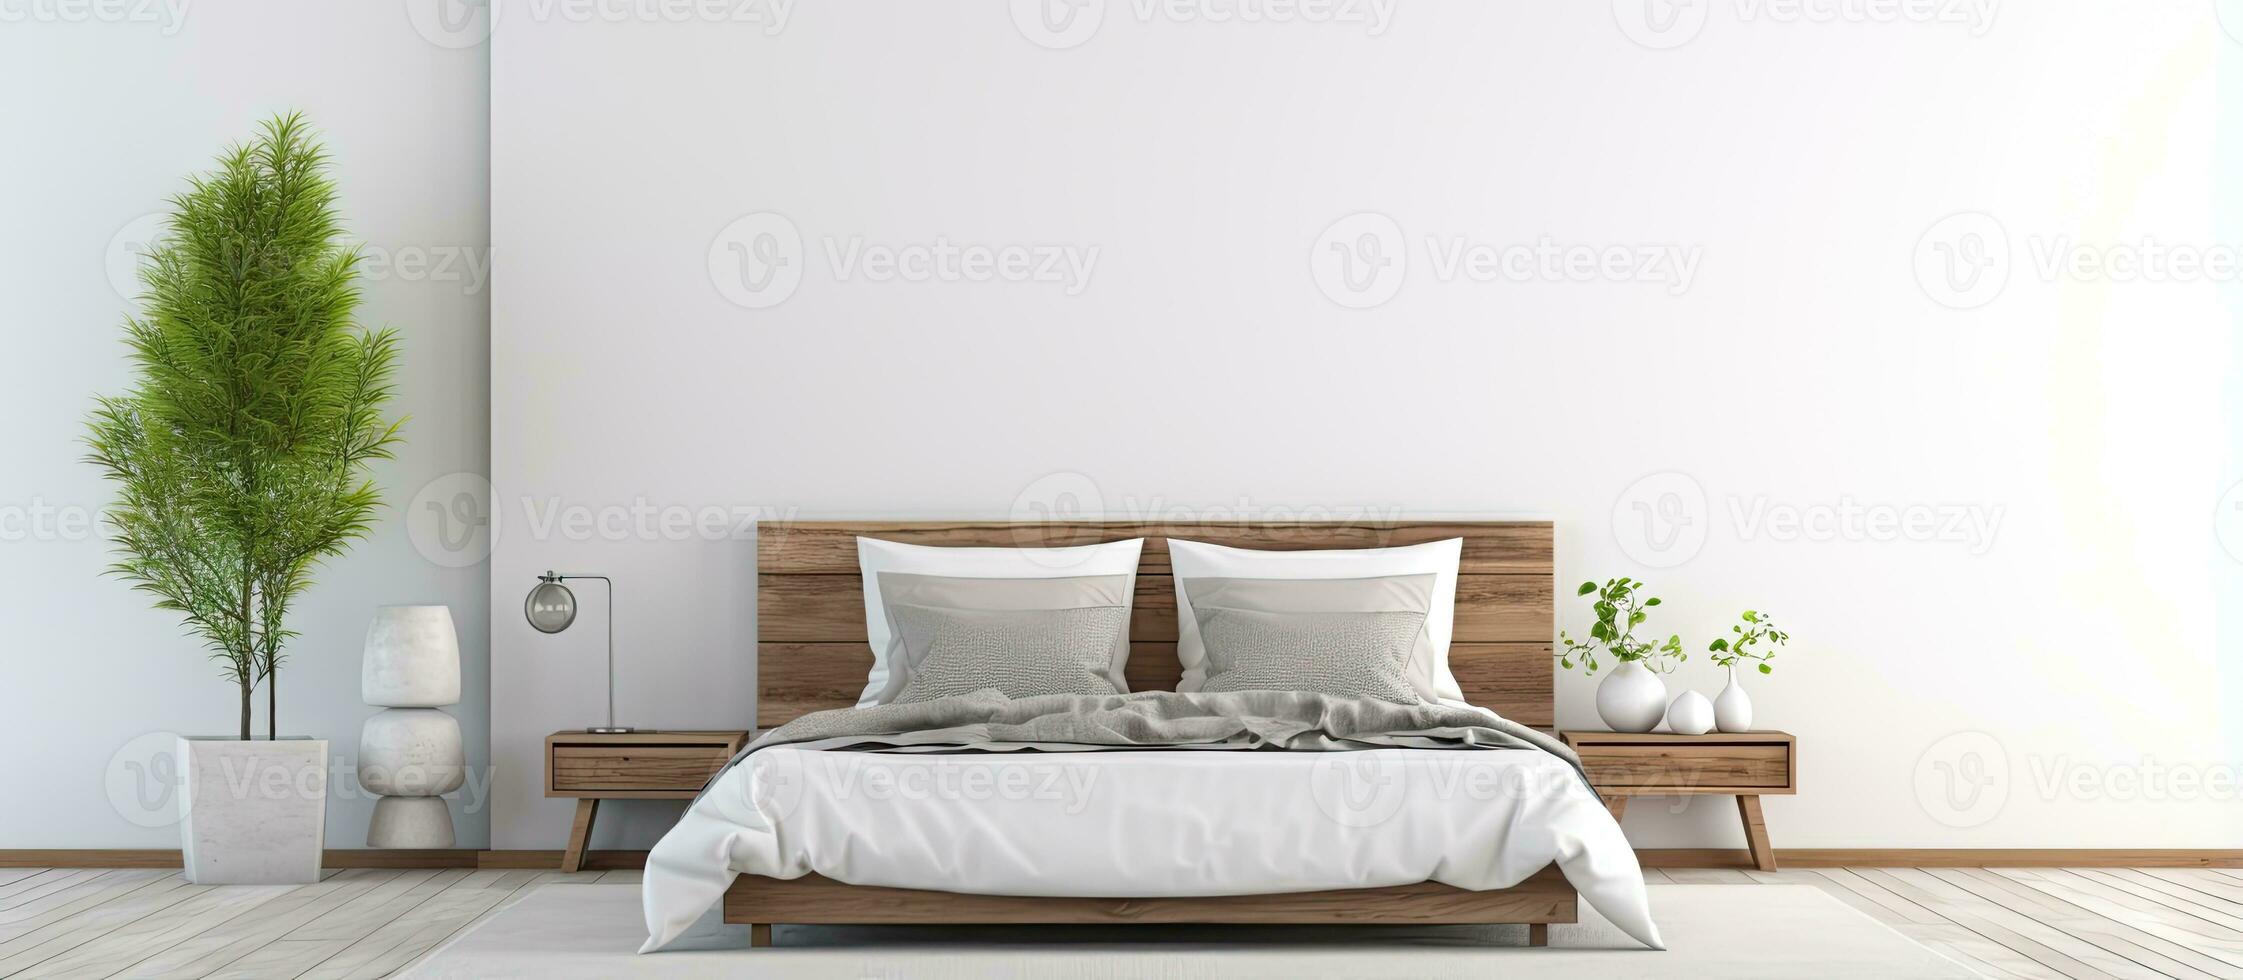 leeren Rahmen auf Mauer im modern Schlafzimmer mit Weiß Bretter Fußboden ist Ideal zum Kunst oder drucken Modelle foto